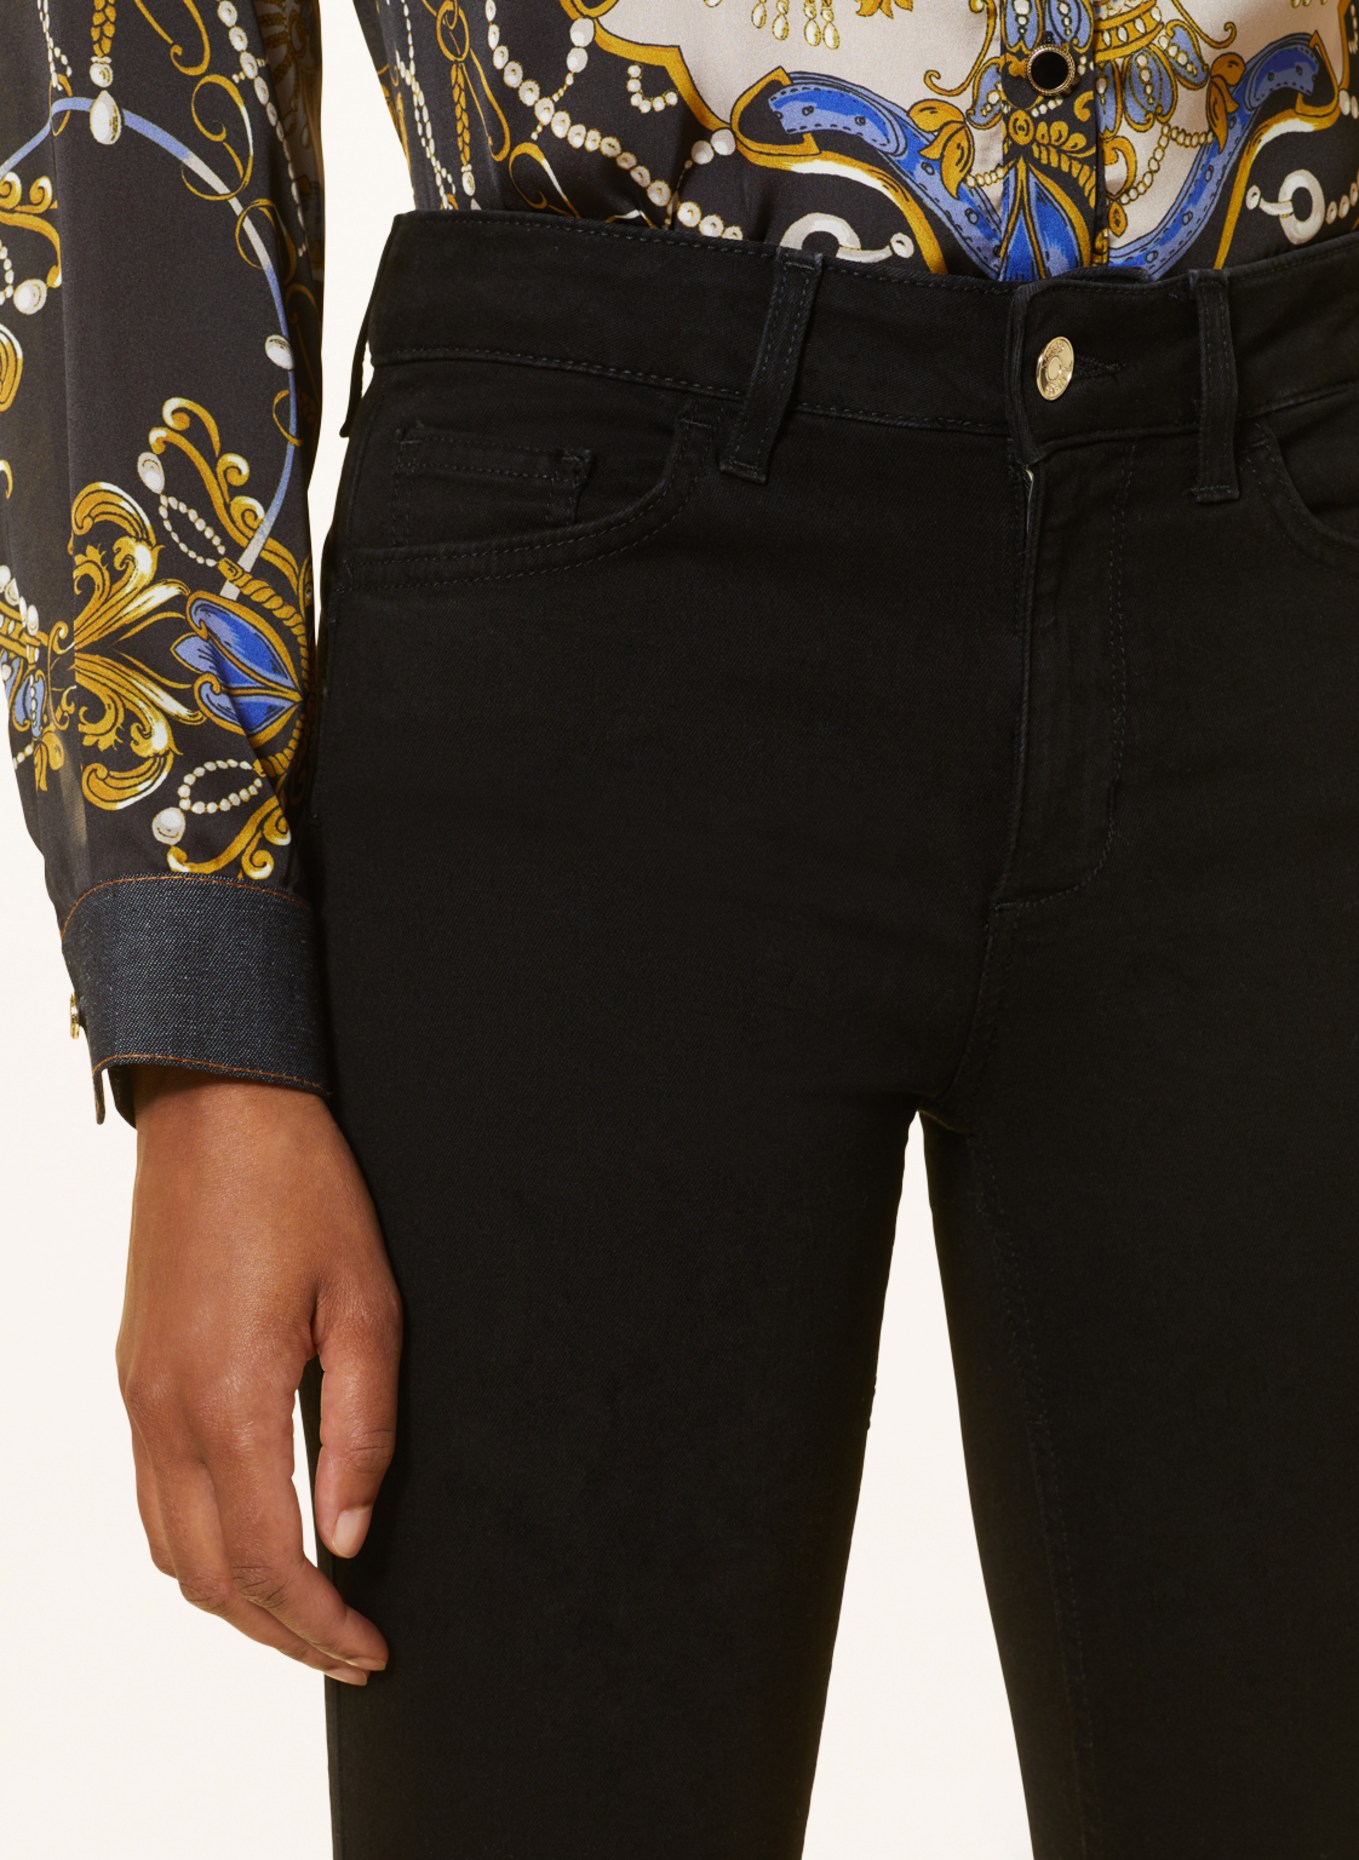 LIU JO Skinny Jeans mit Schmucksteinen, Farbe: 88000 Den.Nero normal wash (Bild 5)